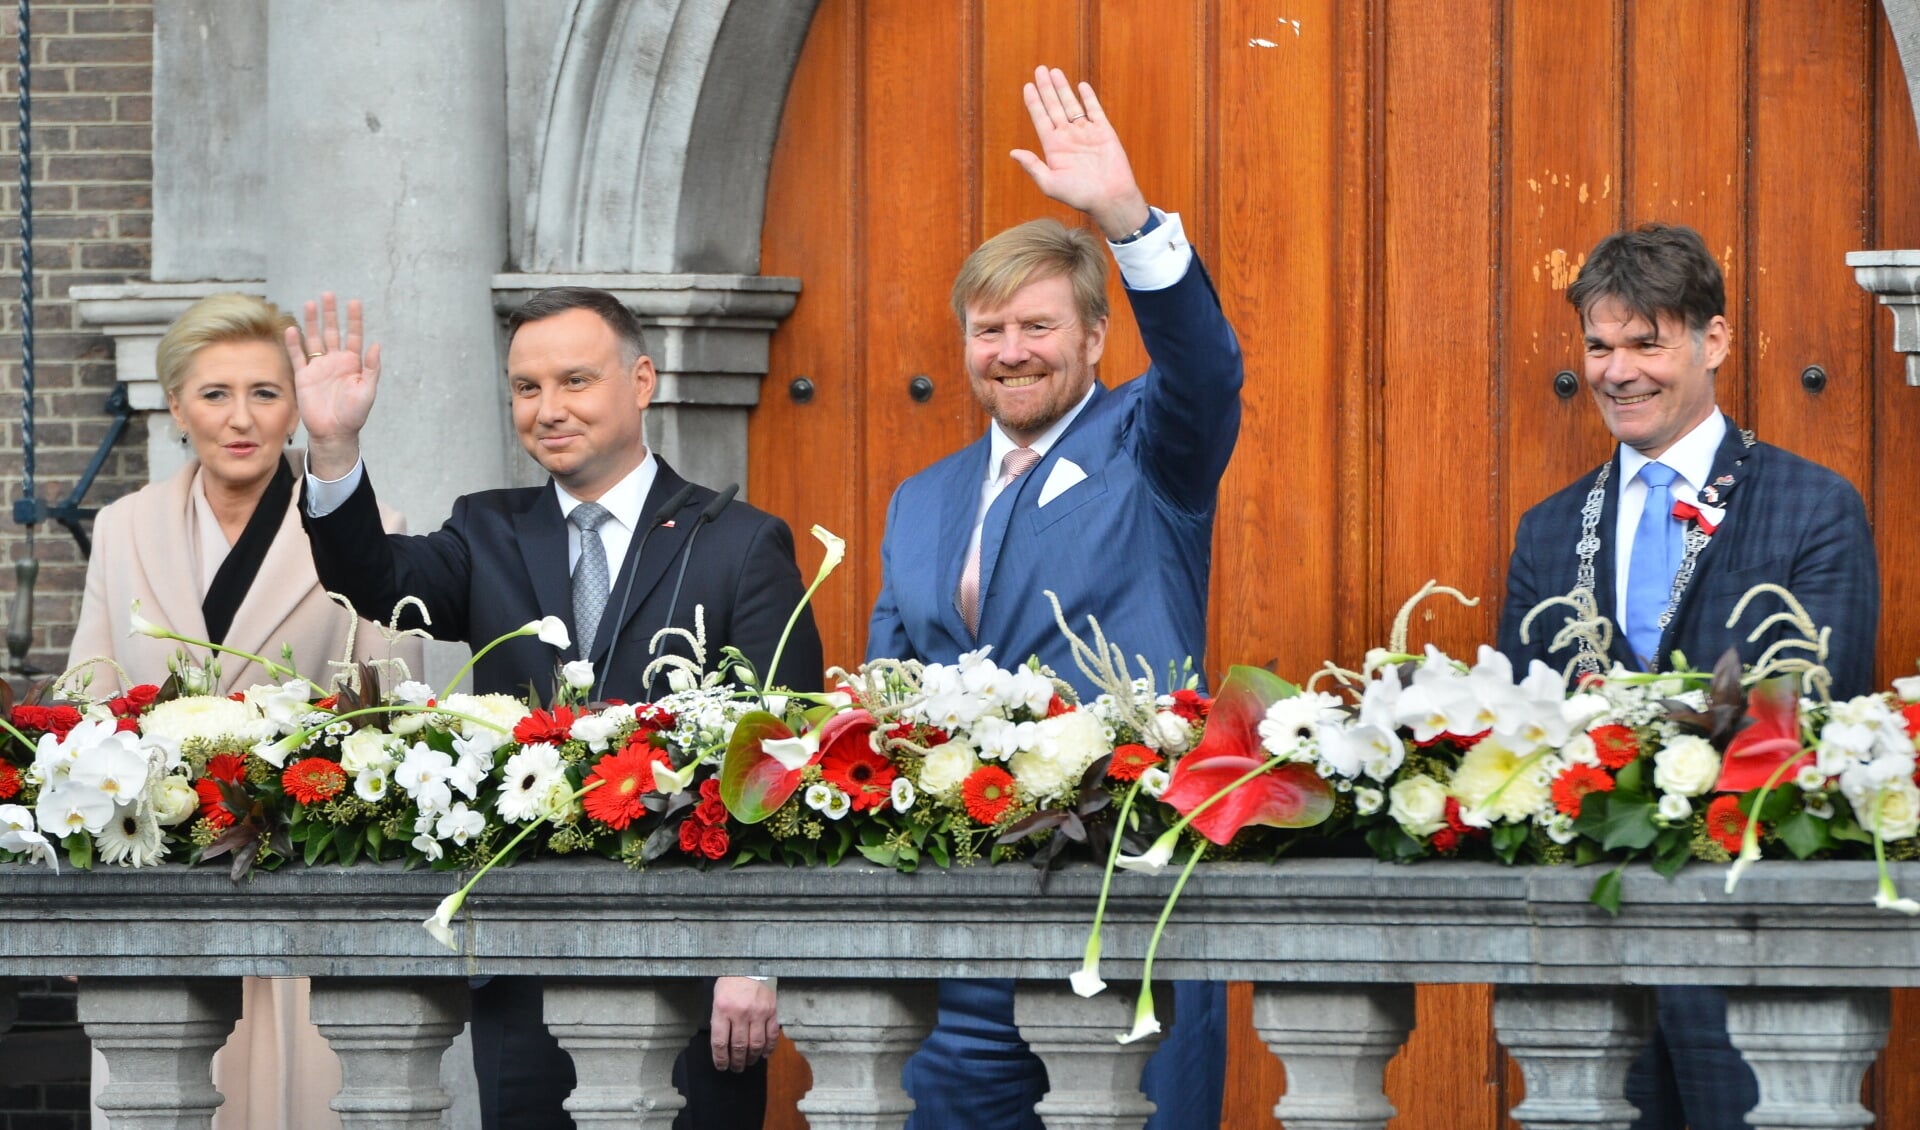 De koning, de Poolse president met zijn vrouw en burgemeester Paul Depla op het bordes van het stadhuis. 